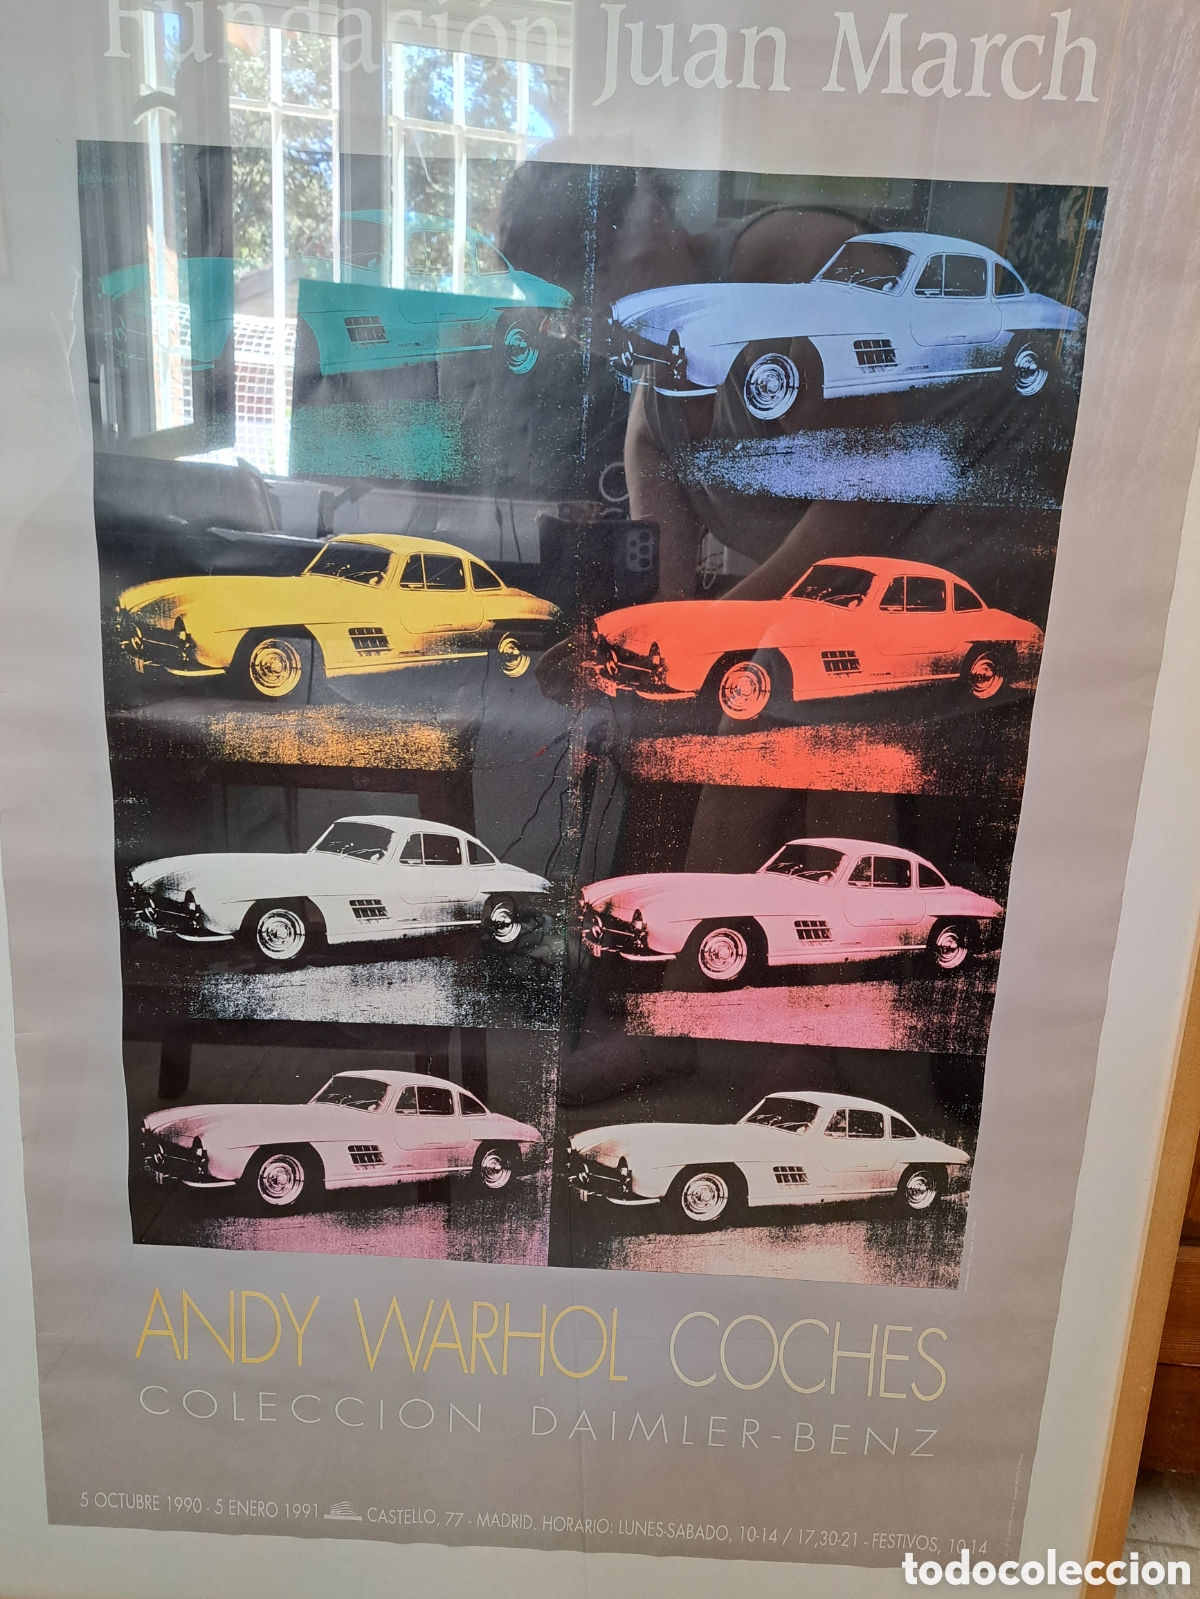 poster expo coches andy warhol - Compra venta en todocoleccion